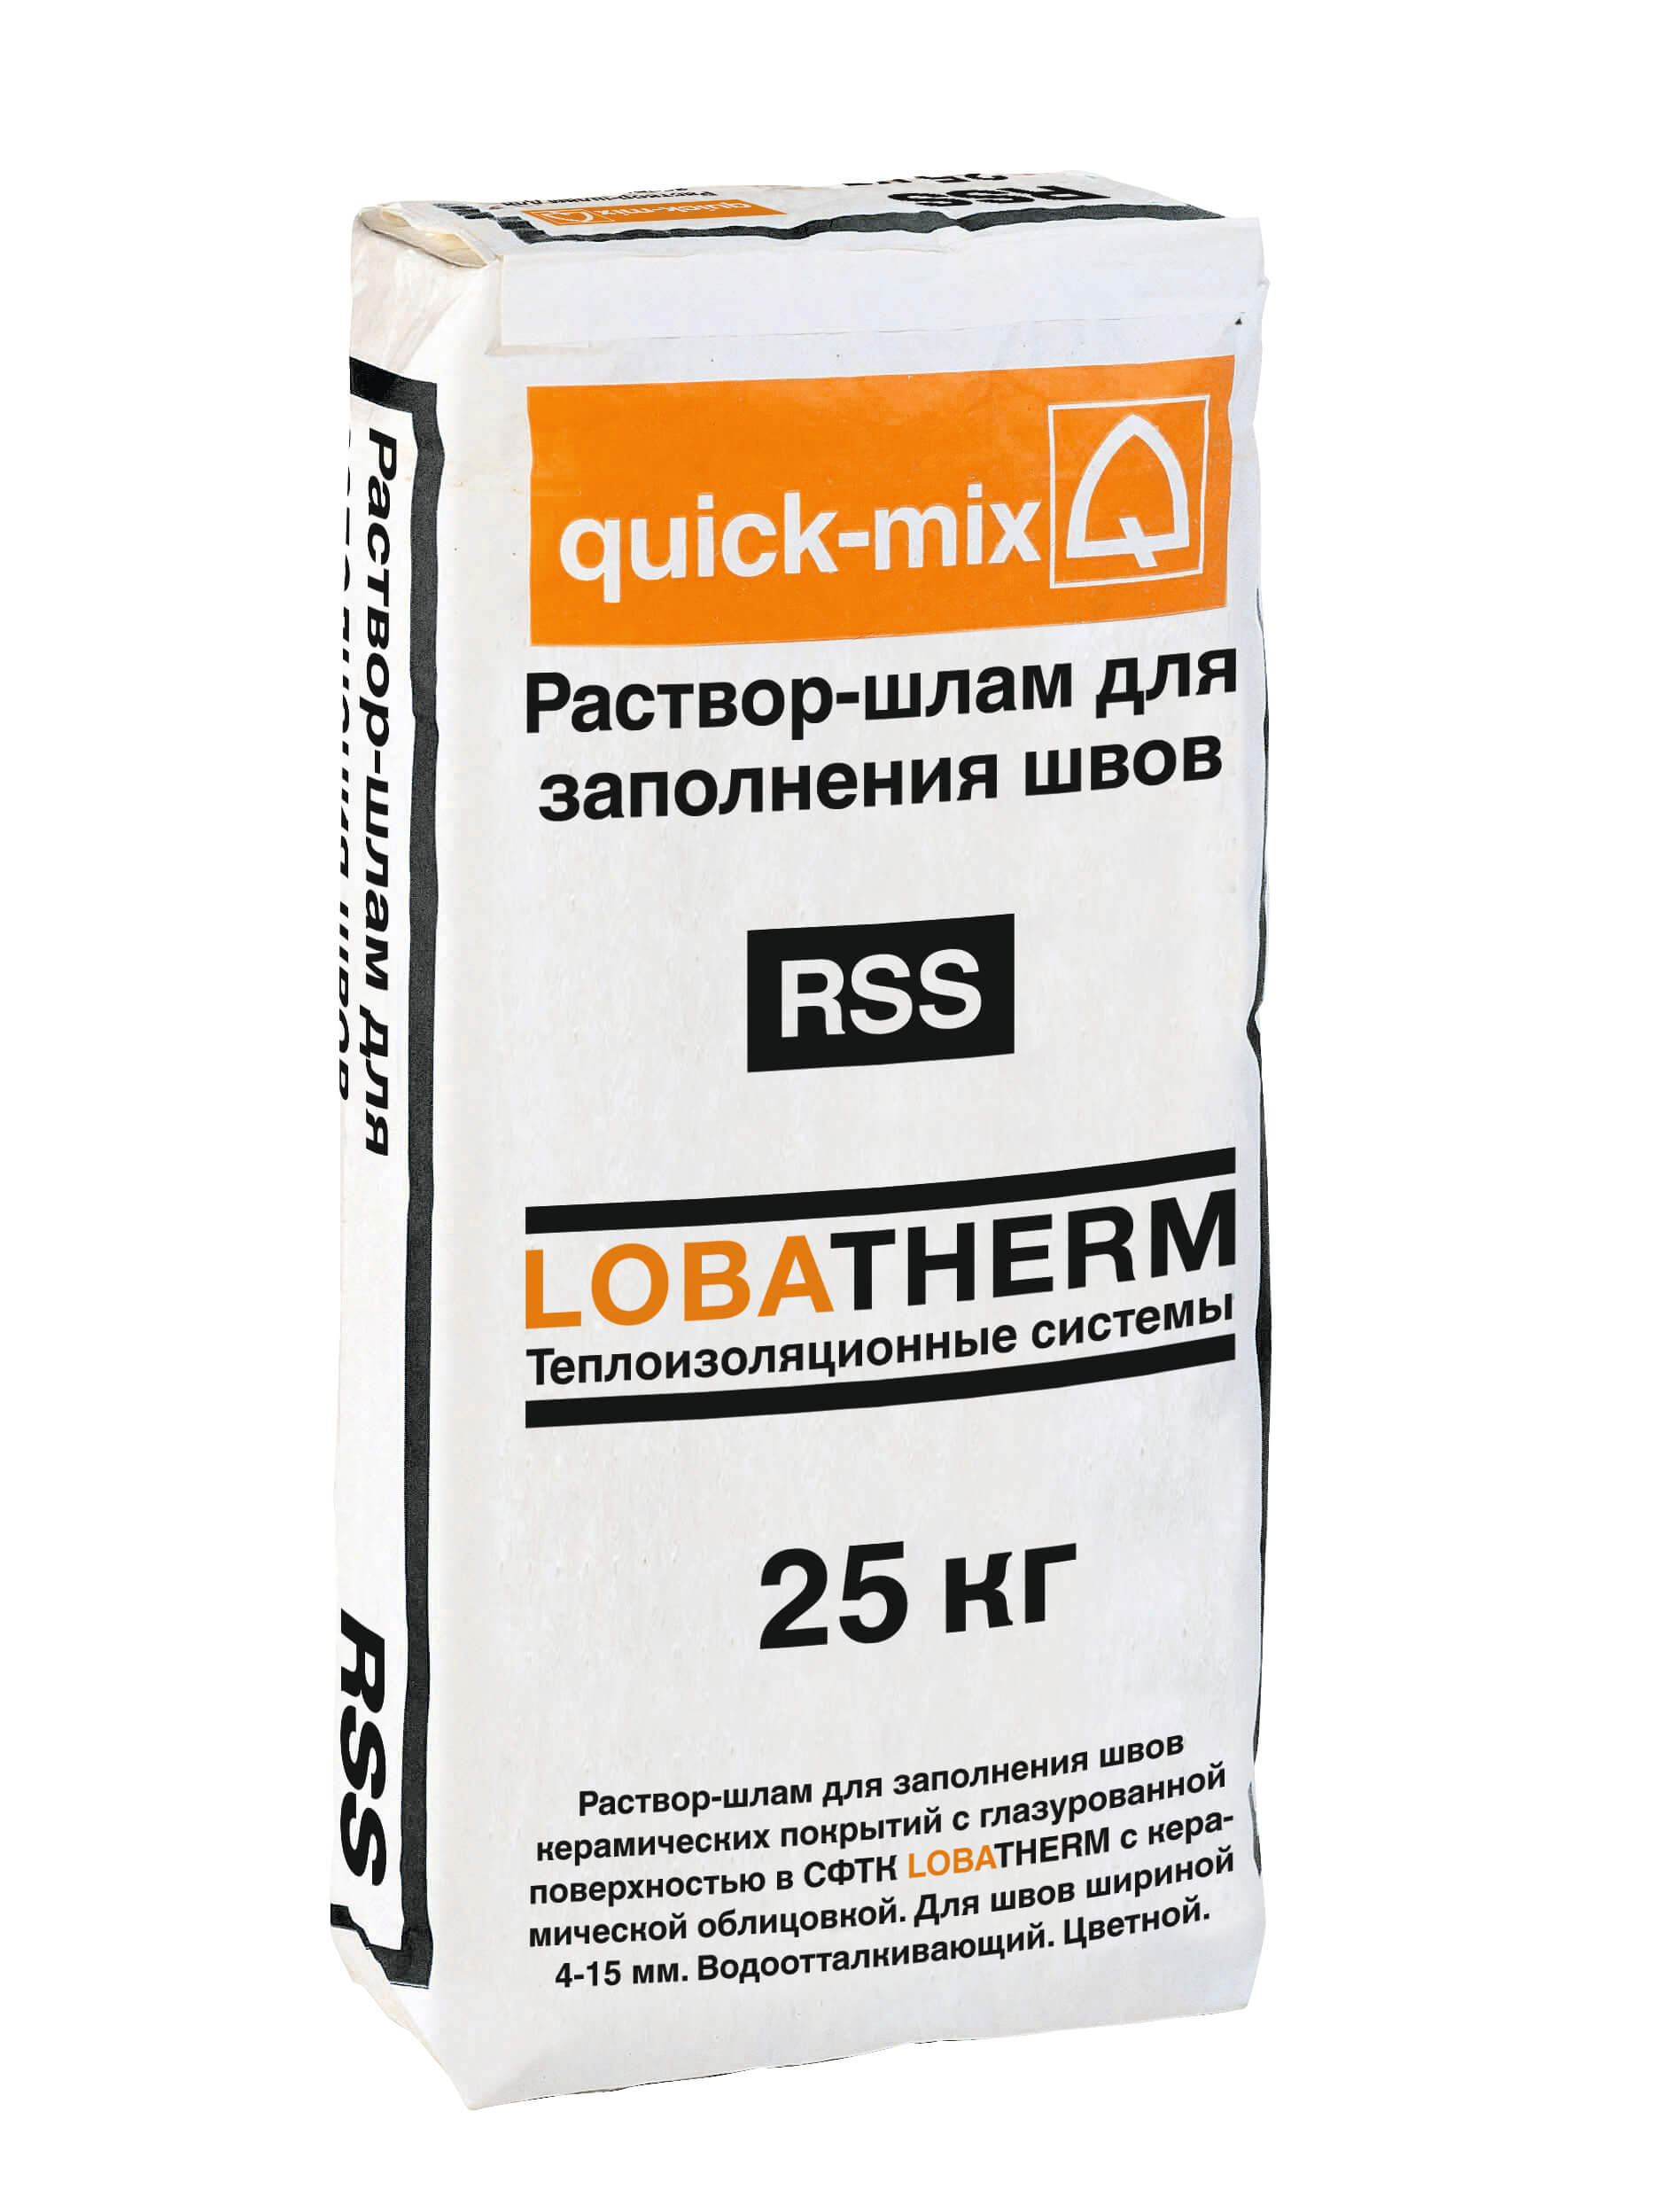 Цветной шовный раствор-шлам для заполнения швов керамических покрытий RSS  в СФТК "LOBATHERM" (белый)